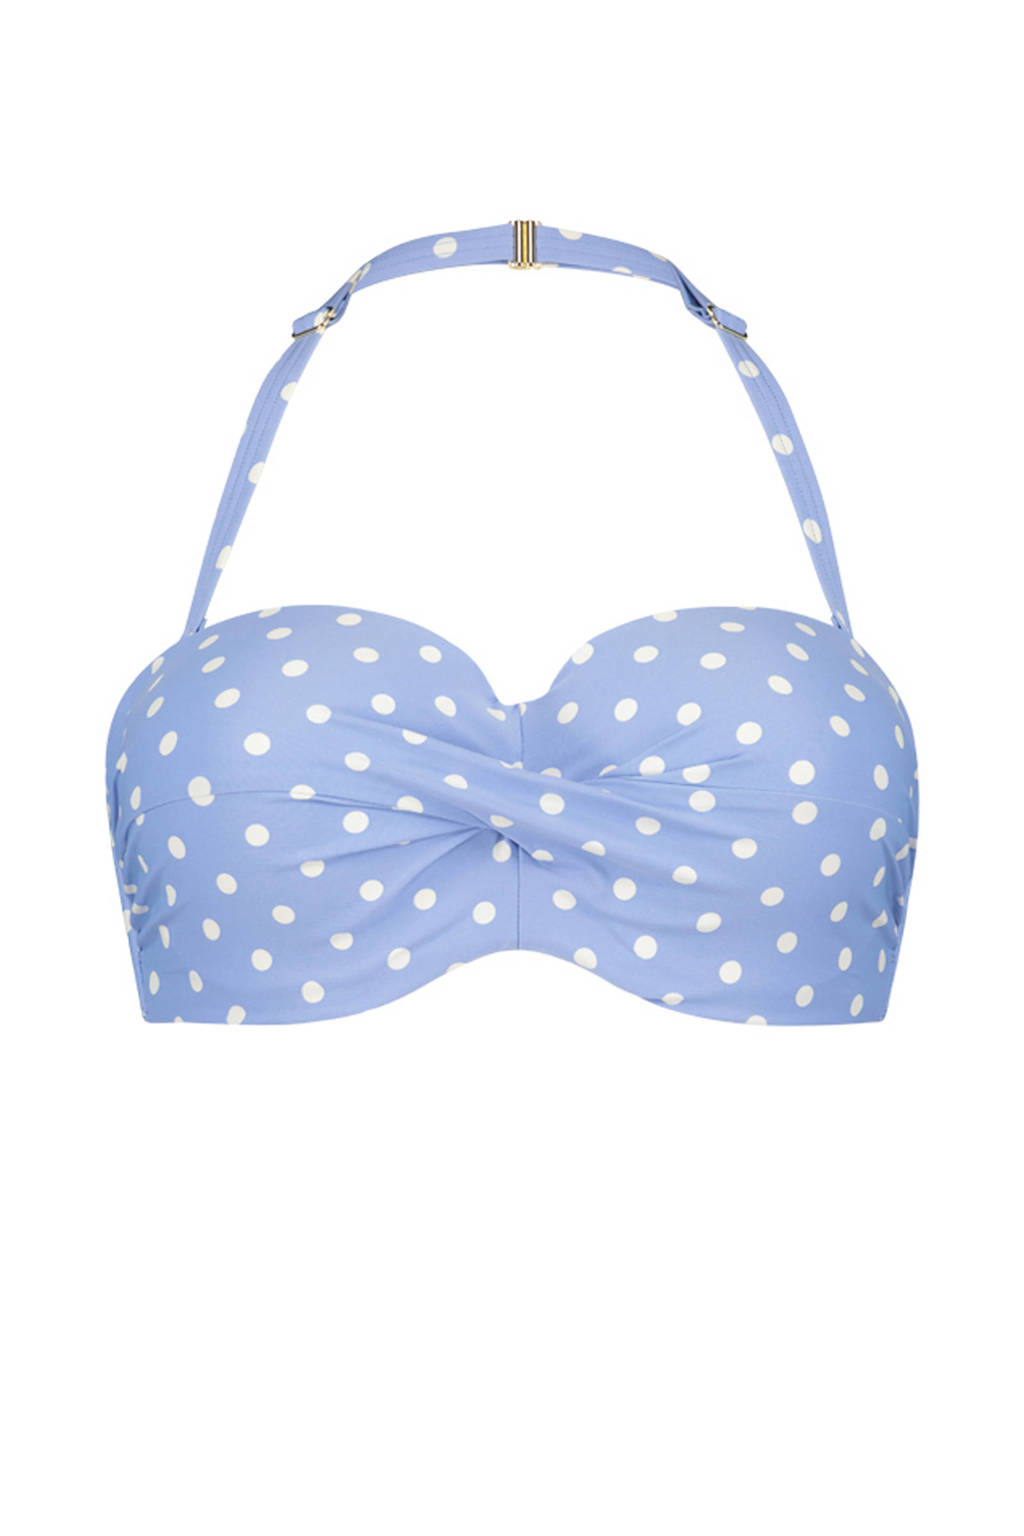 Cyell strapless bandeau bikinitop Just Dot lichtblauw/wit